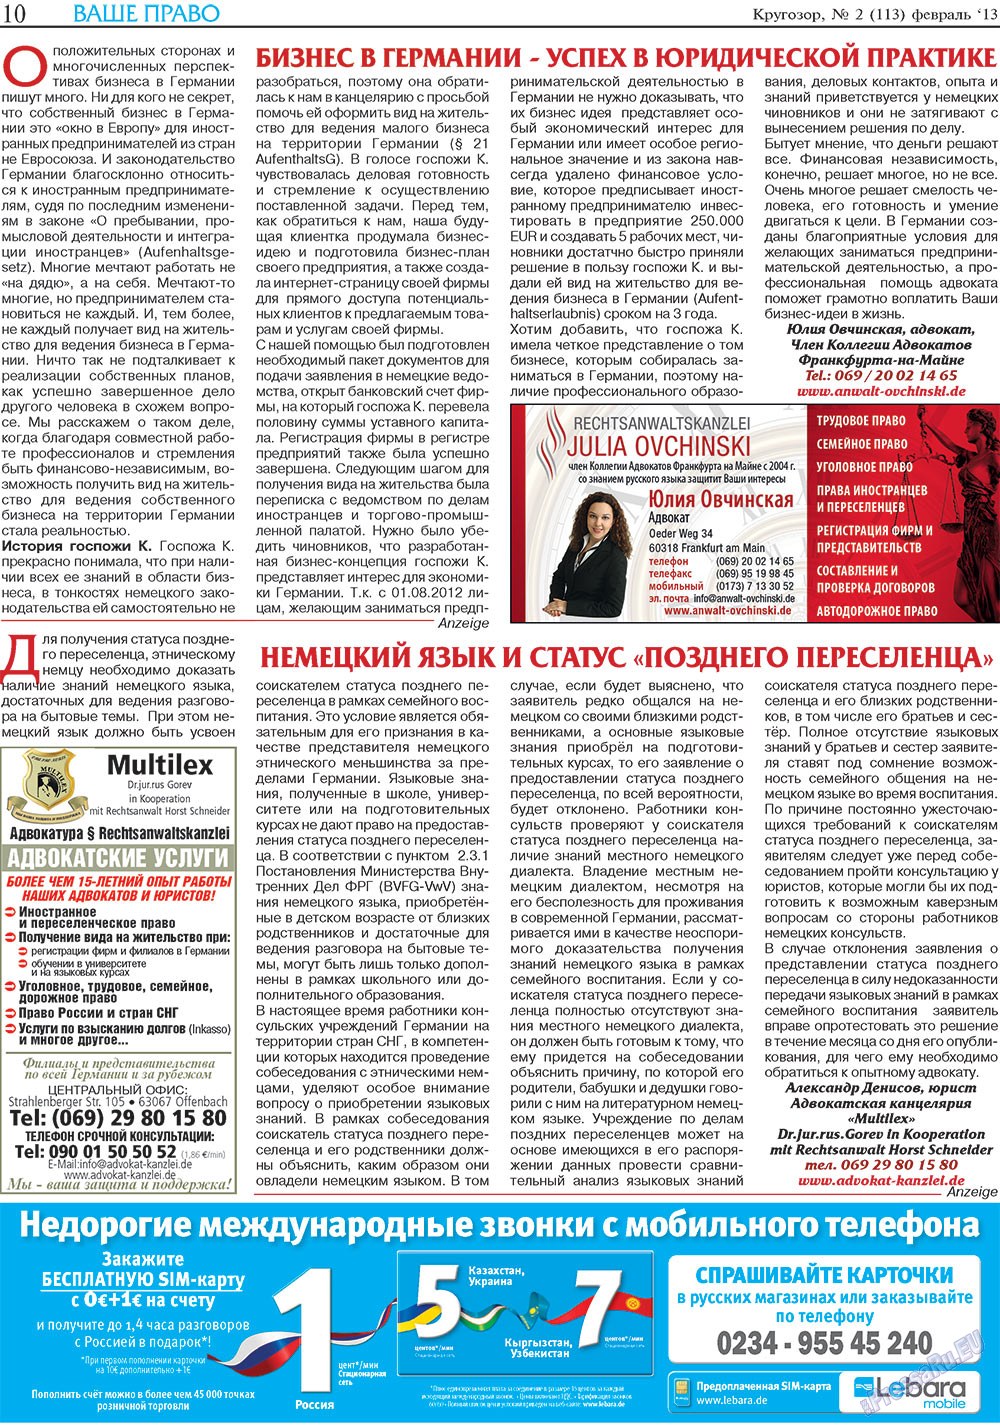 Кругозор (газета). 2013 год, номер 2, стр. 10